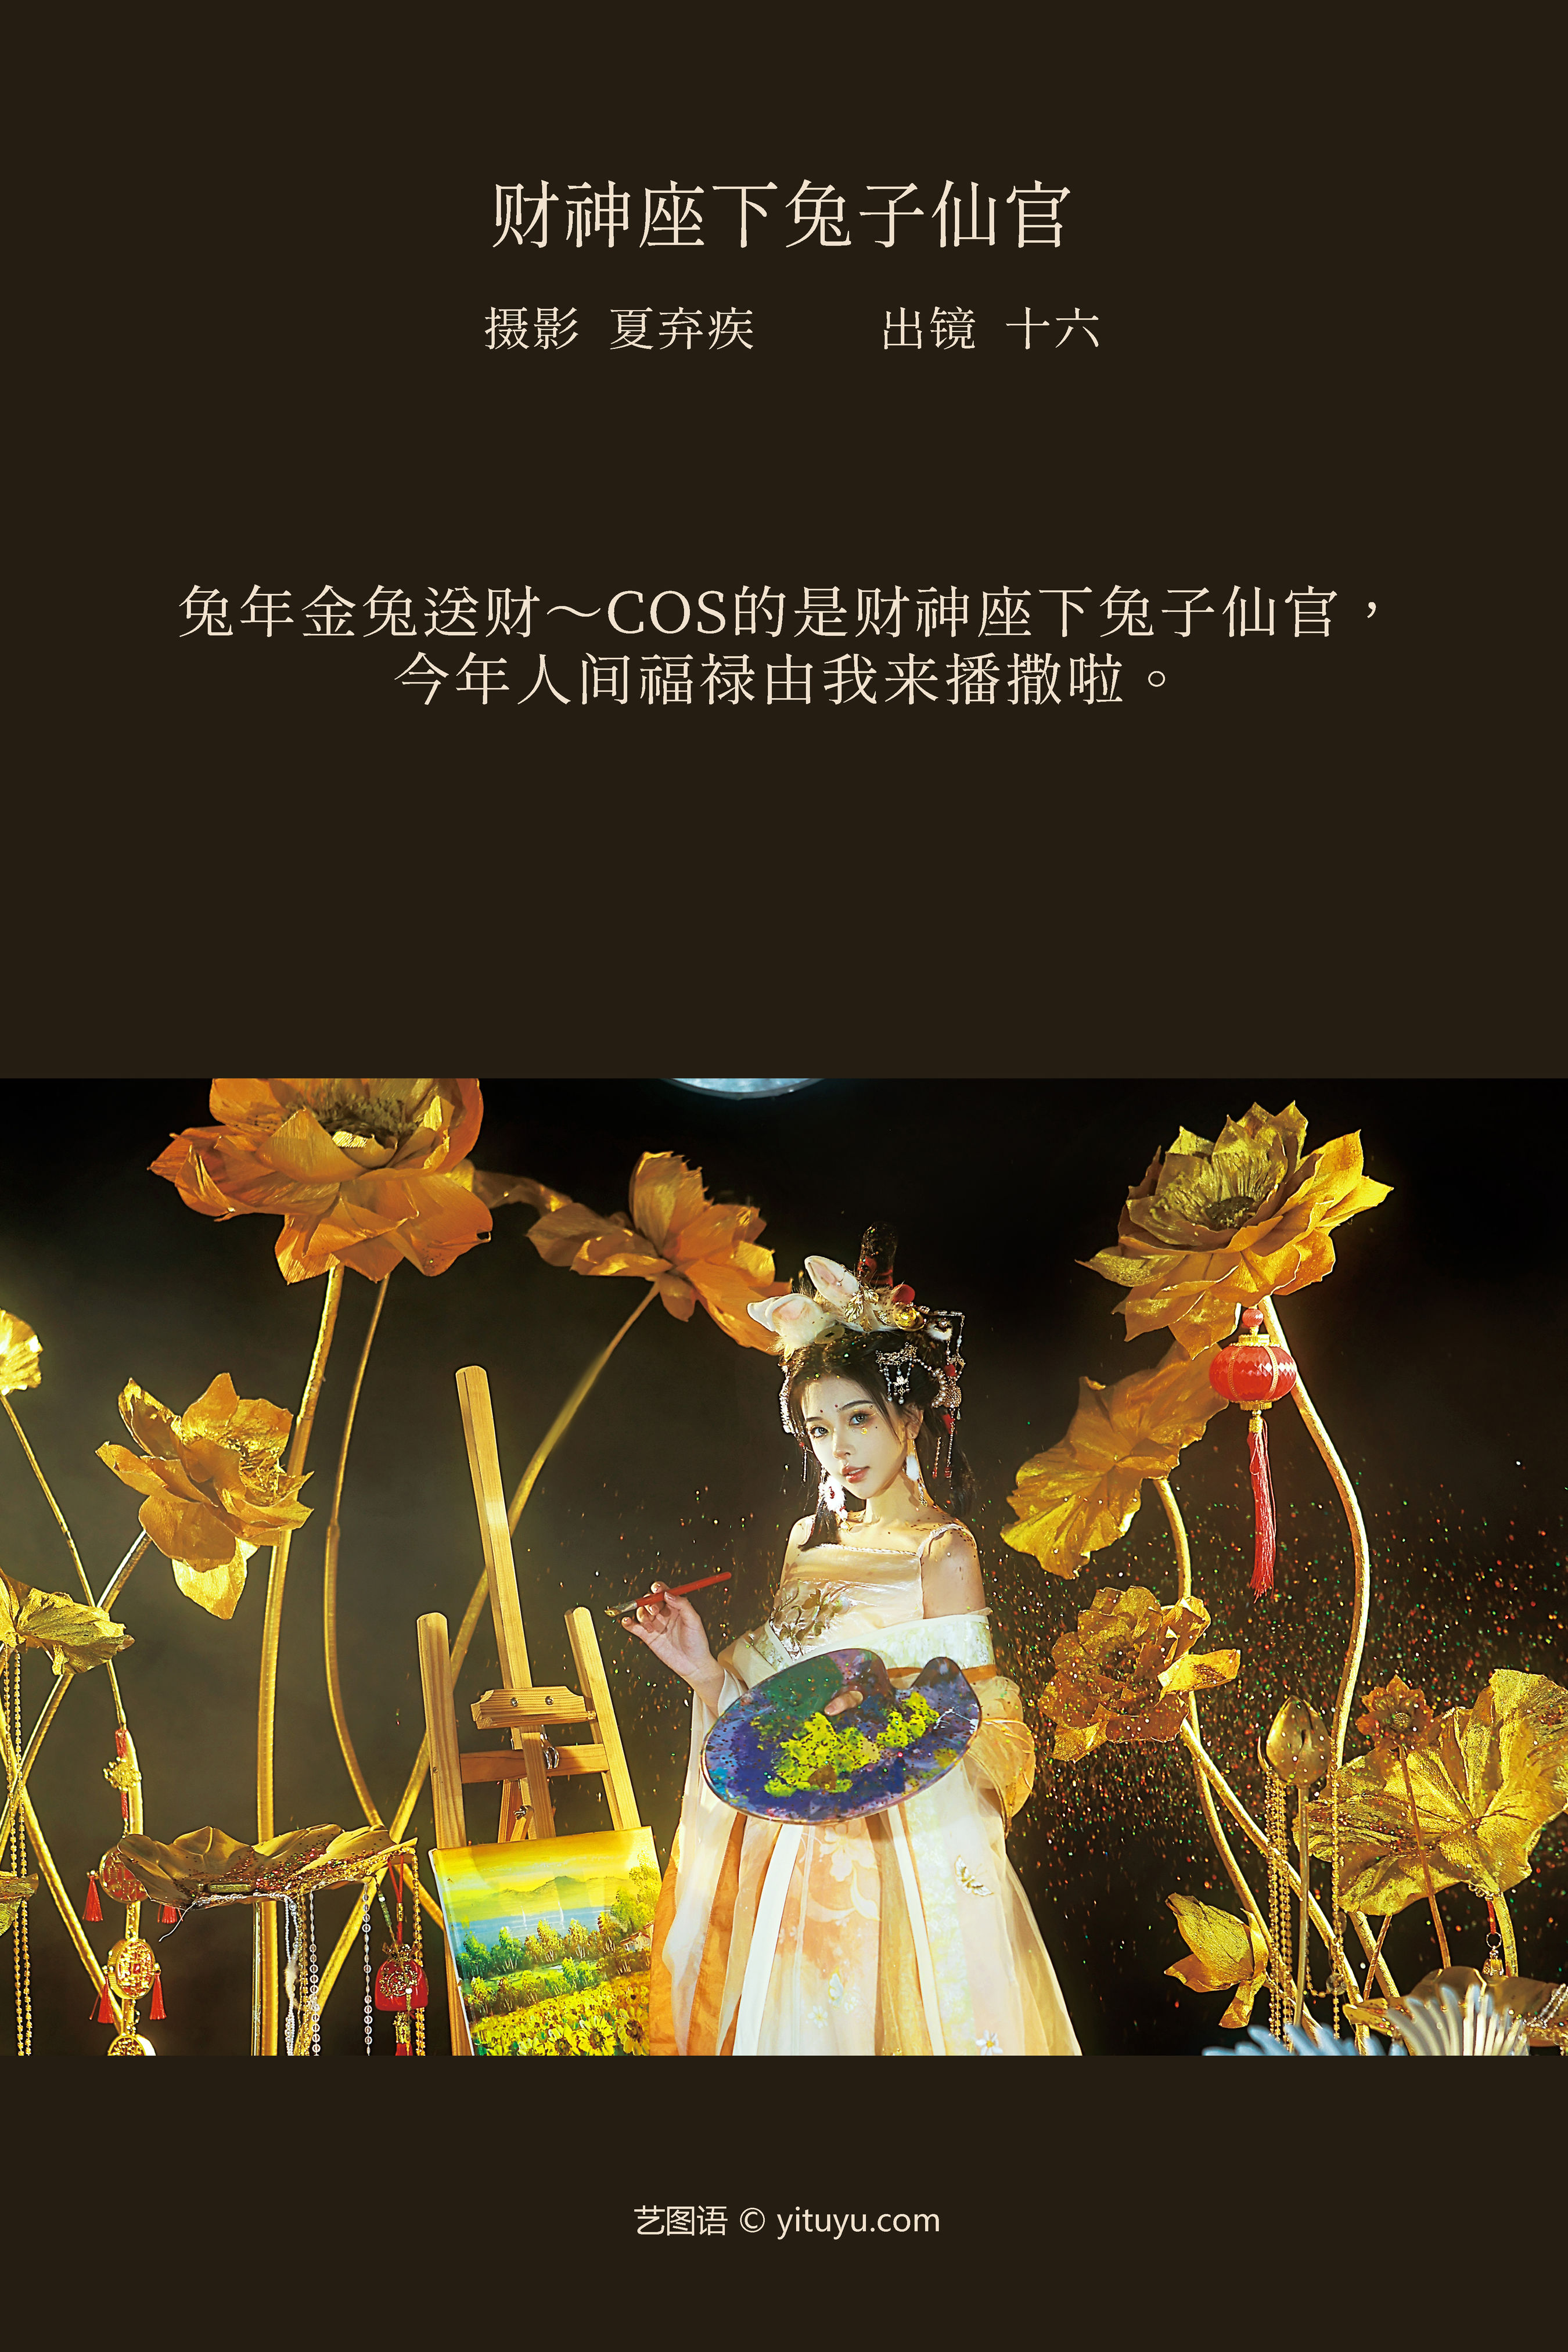 财神座下兔子仙官 美图 中国风 仙气 古典 艺术 个性&YiTuYu艺图语-2